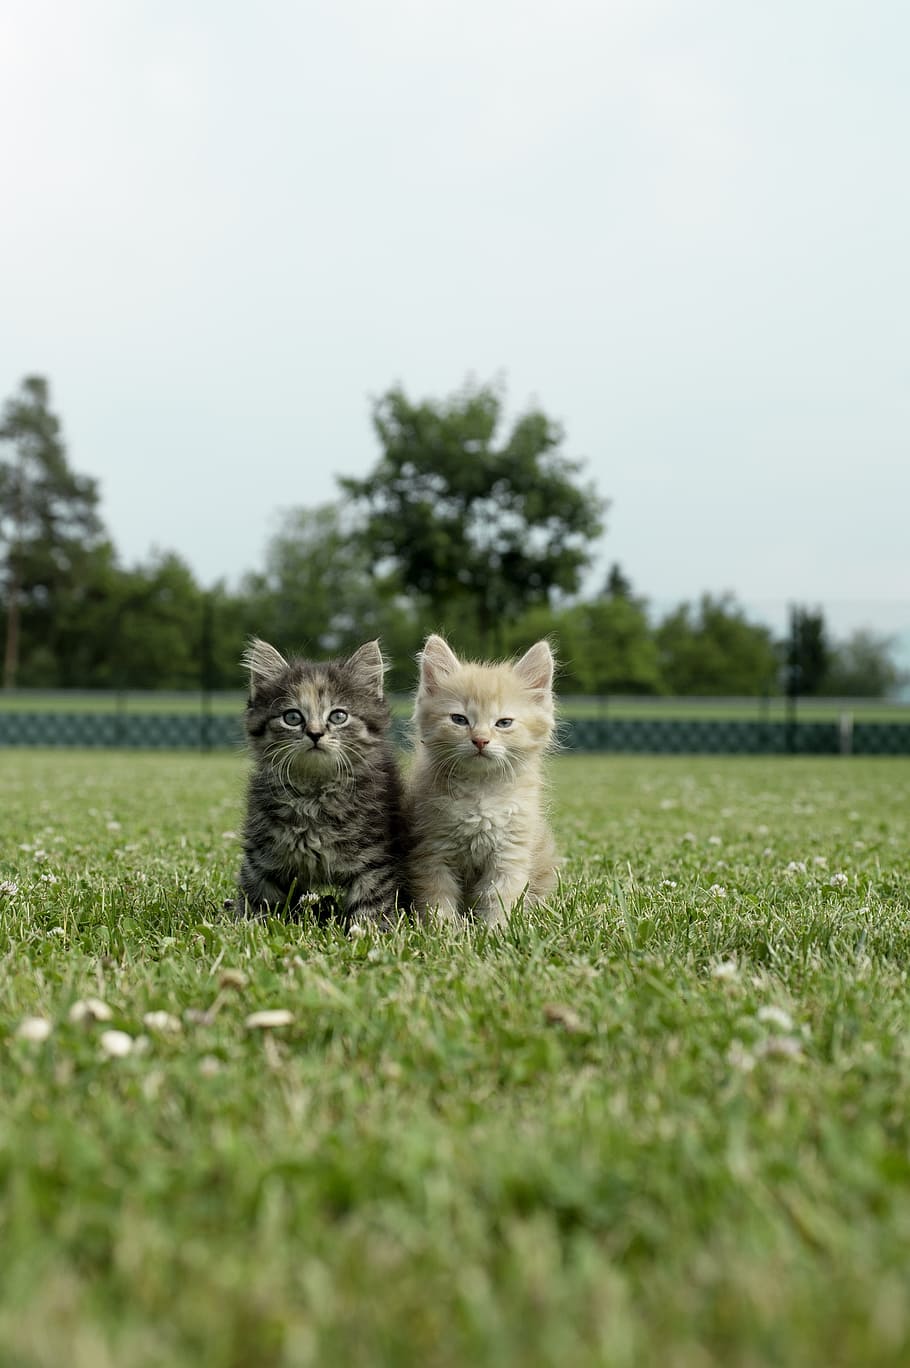 selectivo, fotografía de enfoque, dos, gris, marrón, gatitos persas, gatito, gato, gato tigre, gato joven